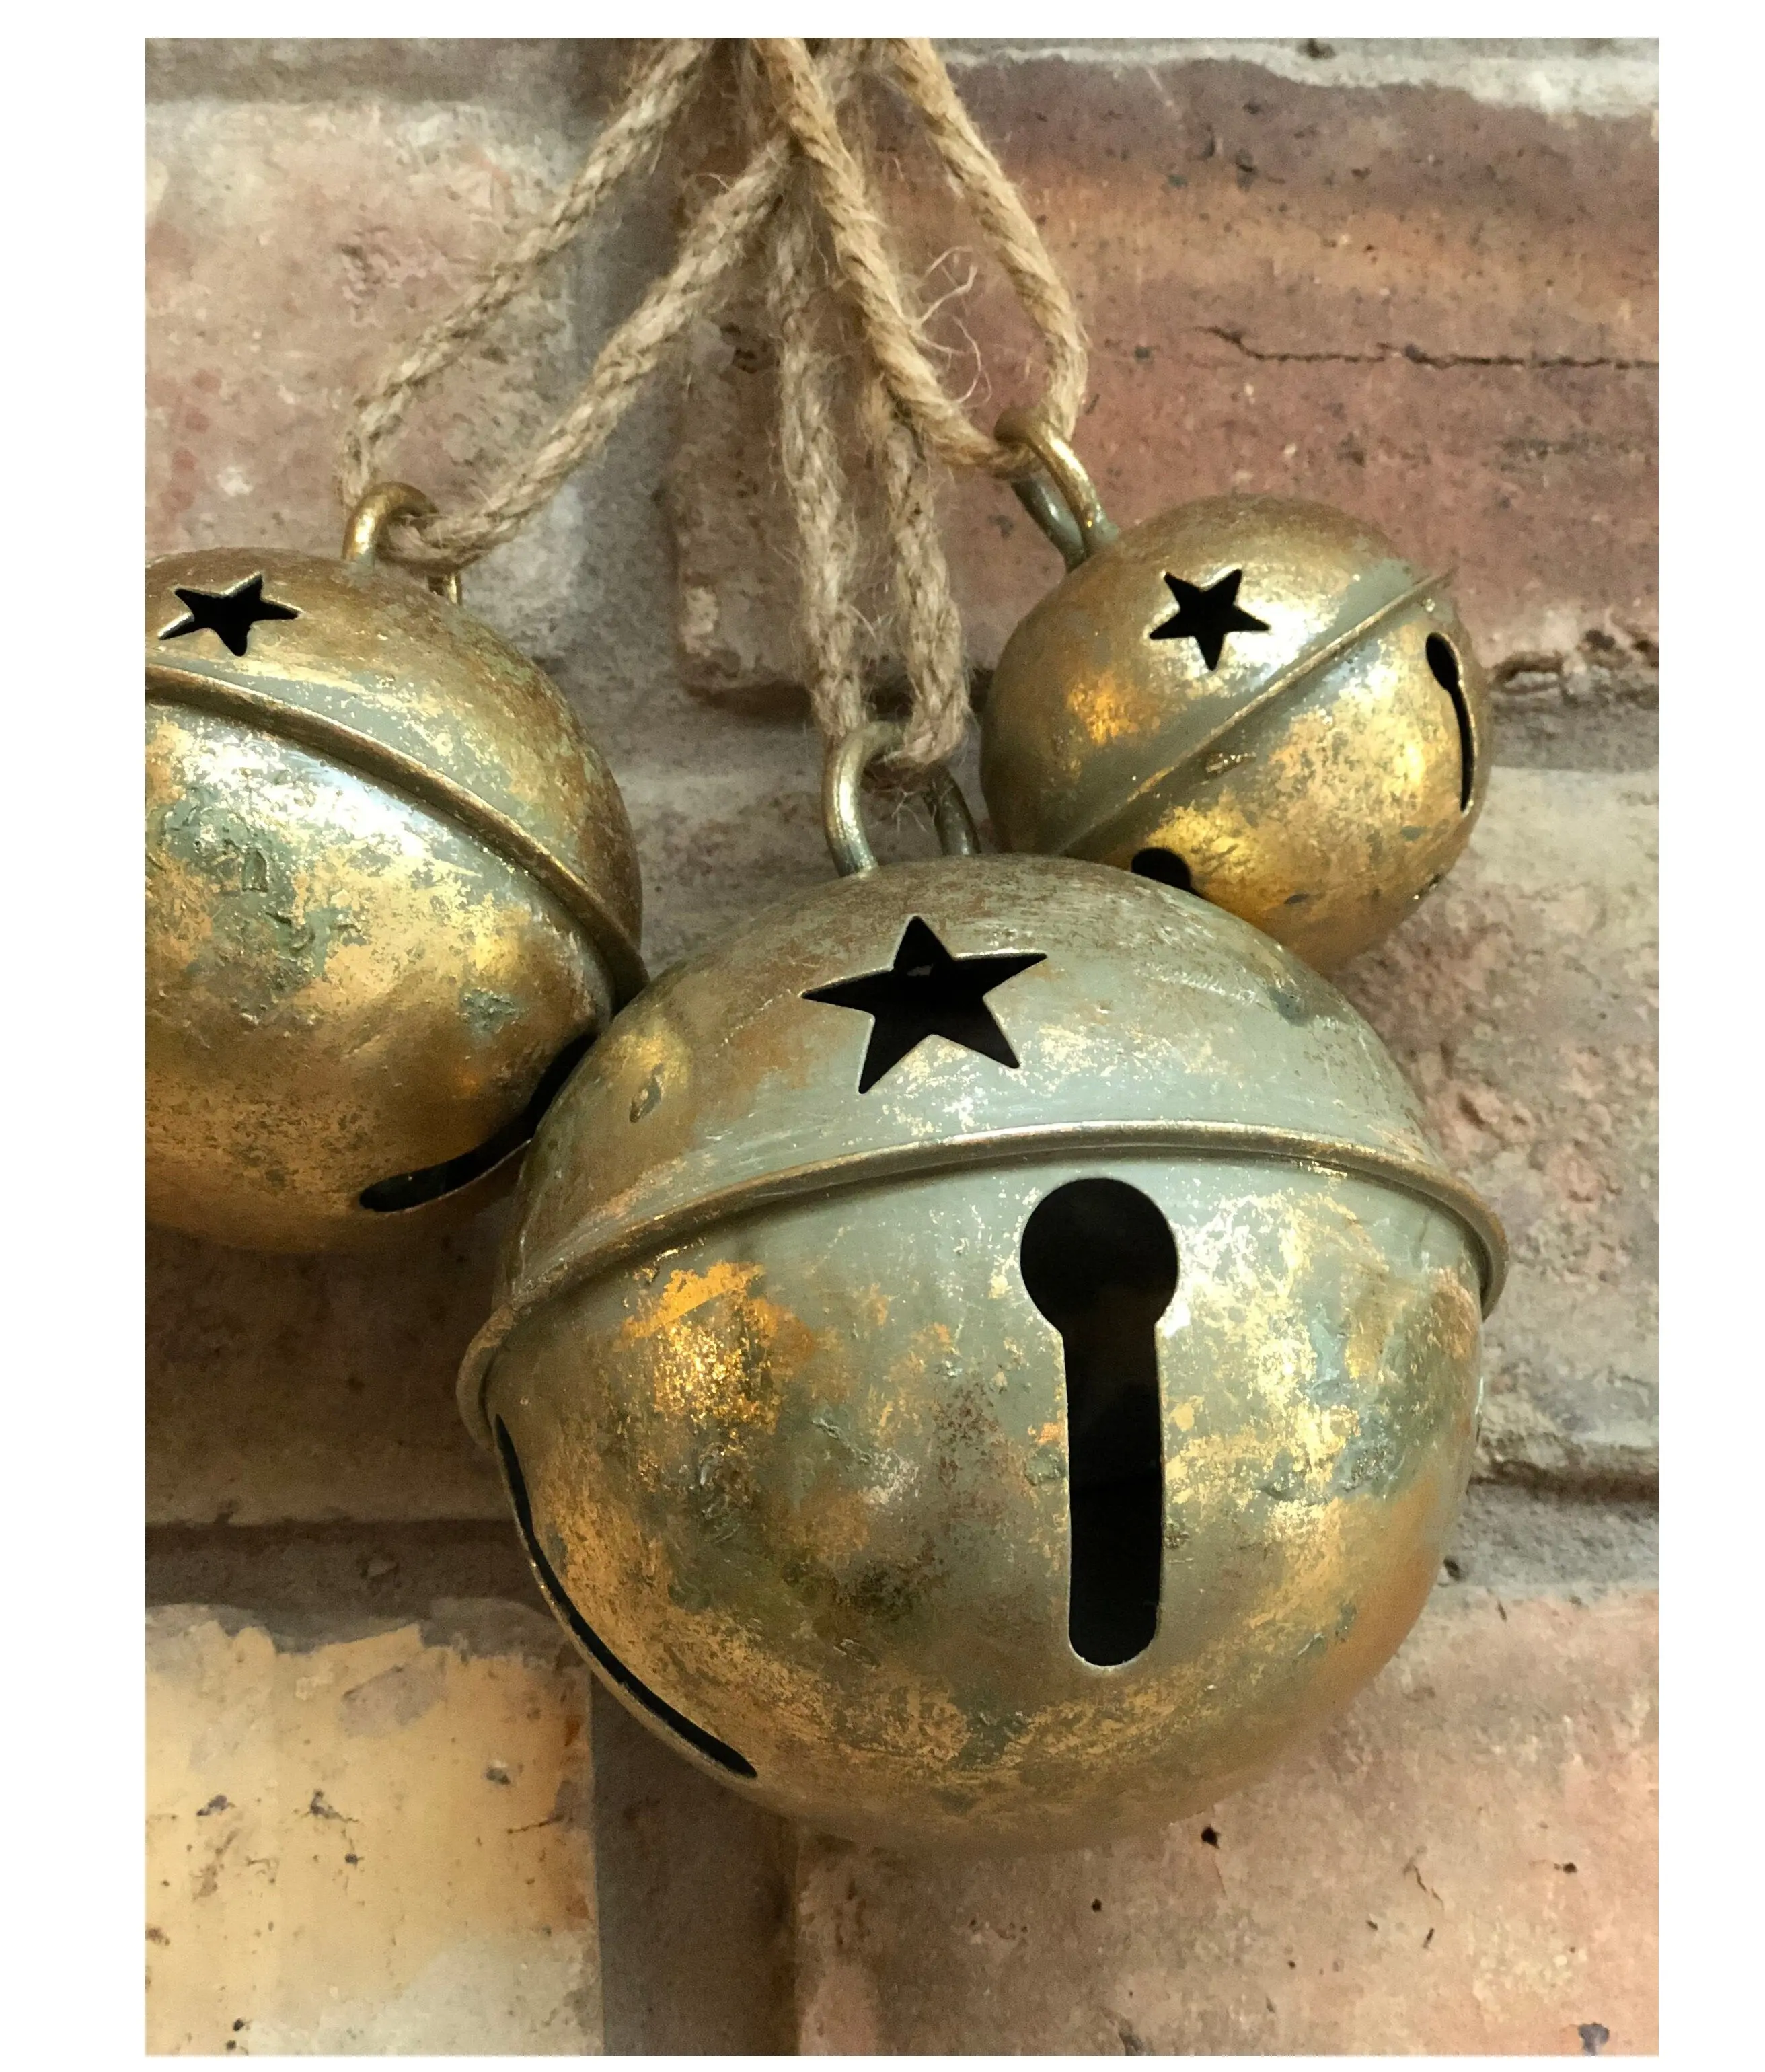 Antike Gold Metall Jingle Bell für Weihnachts baum dekoration Handgemachte Weihnachts schmuck Neue Weihnachts glocke im Großhandels preis